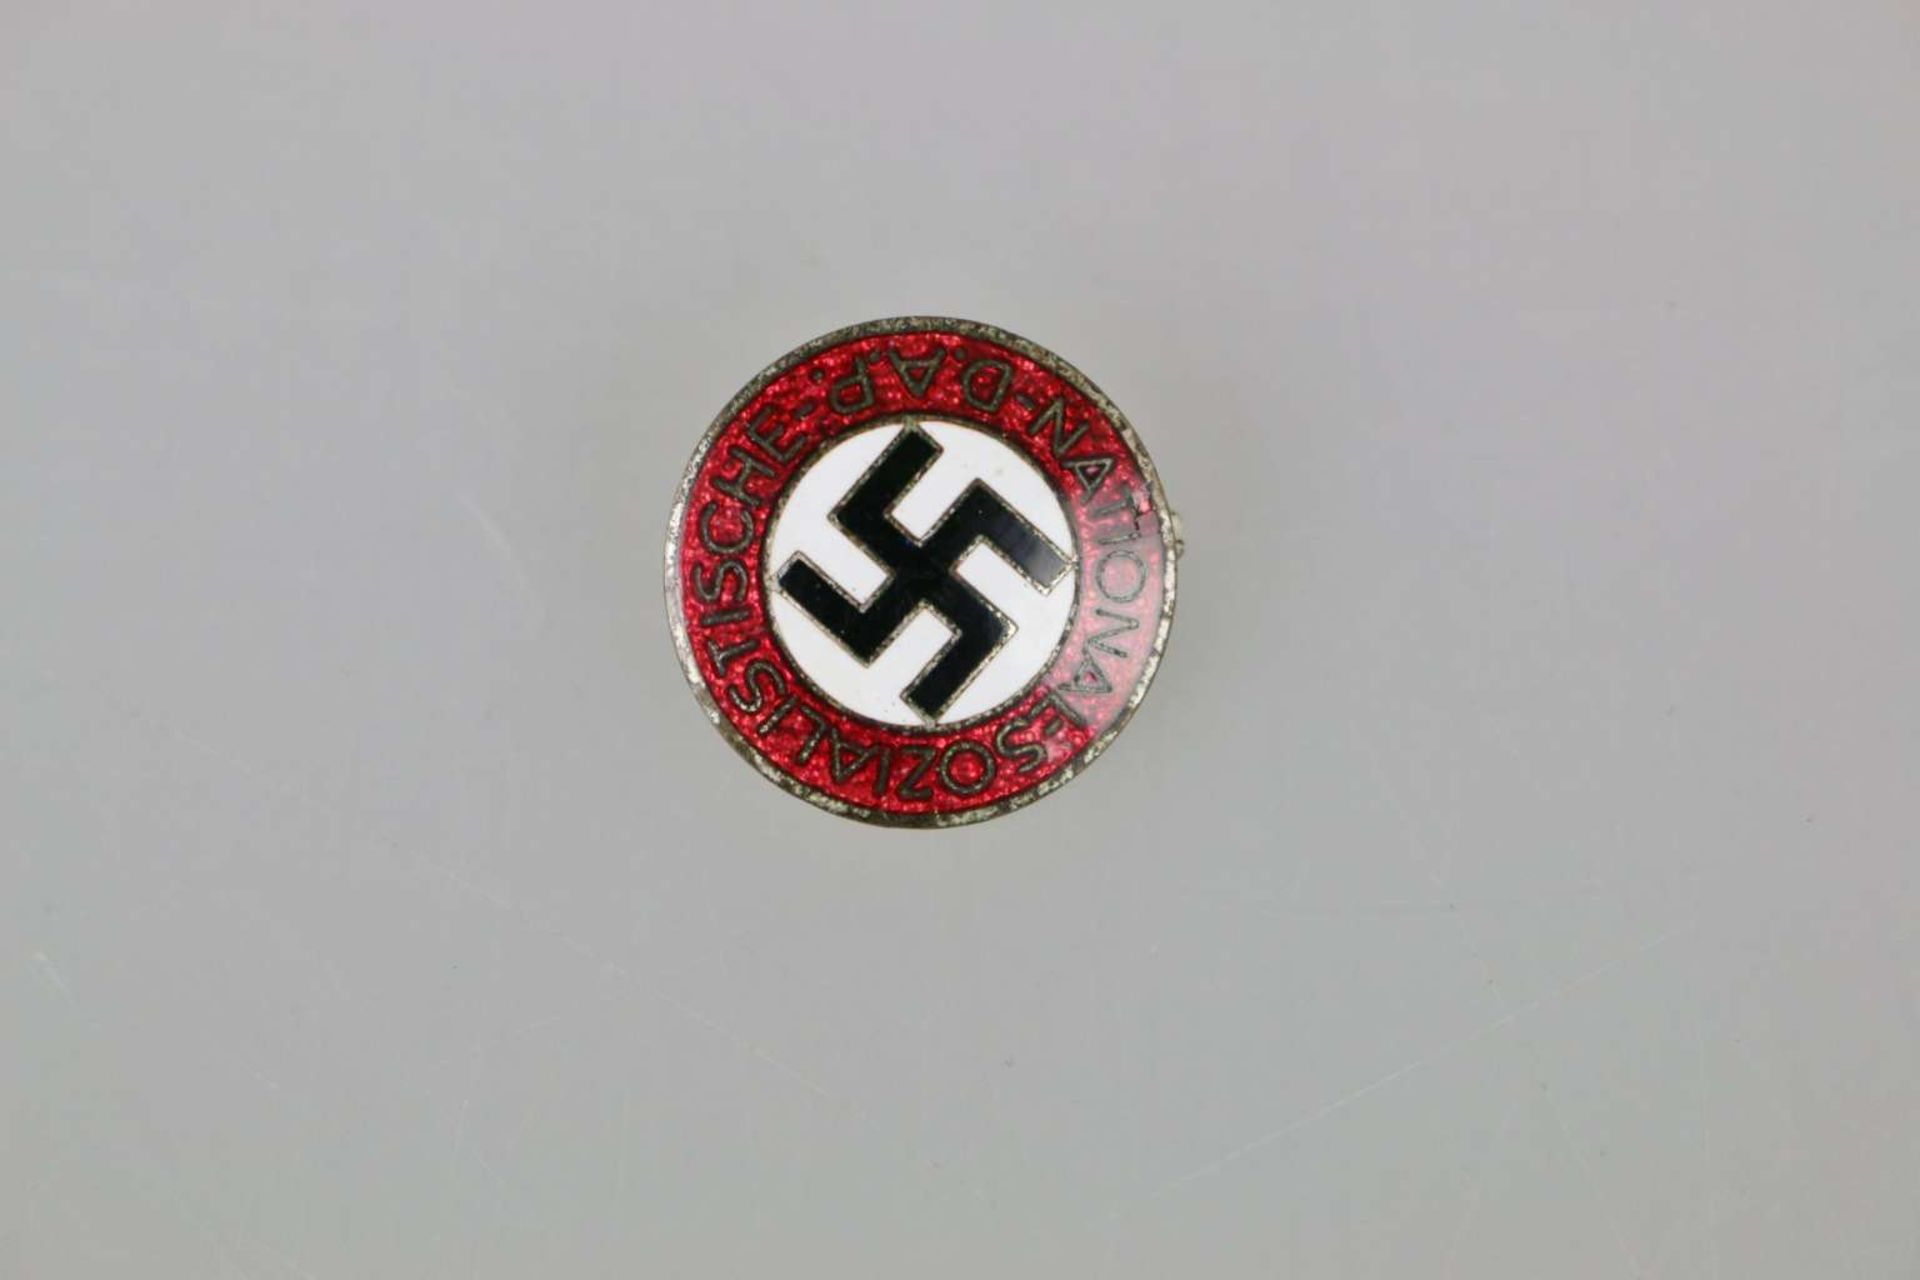 Drittes Reich, NSDAP Parteiabzeichen - Image 2 of 3